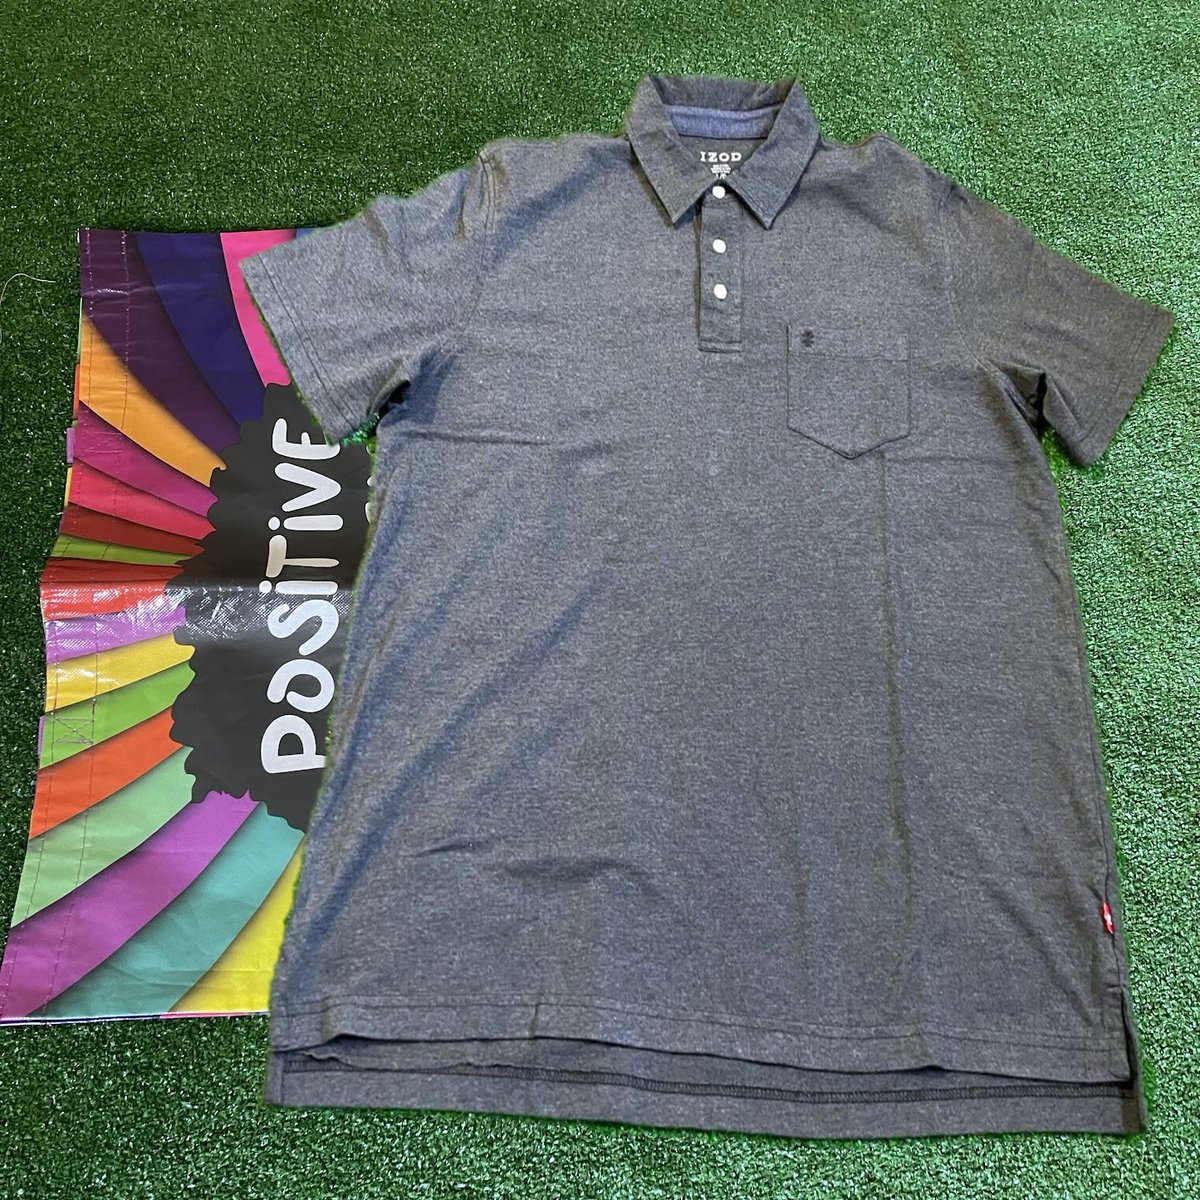 Izod Pocket Short Sleeve Easy Fit Golf Classic Y2K Polo Charcoal Shirt Size L

#Izod
#GolfPolo
#ShortSleeve
#CharcoalShirt
#ClassicFit
#SizeL
#Y2KStyle
#GolfFashion
#CasualWear
#easyfit ebay.com/itm/1263937535…